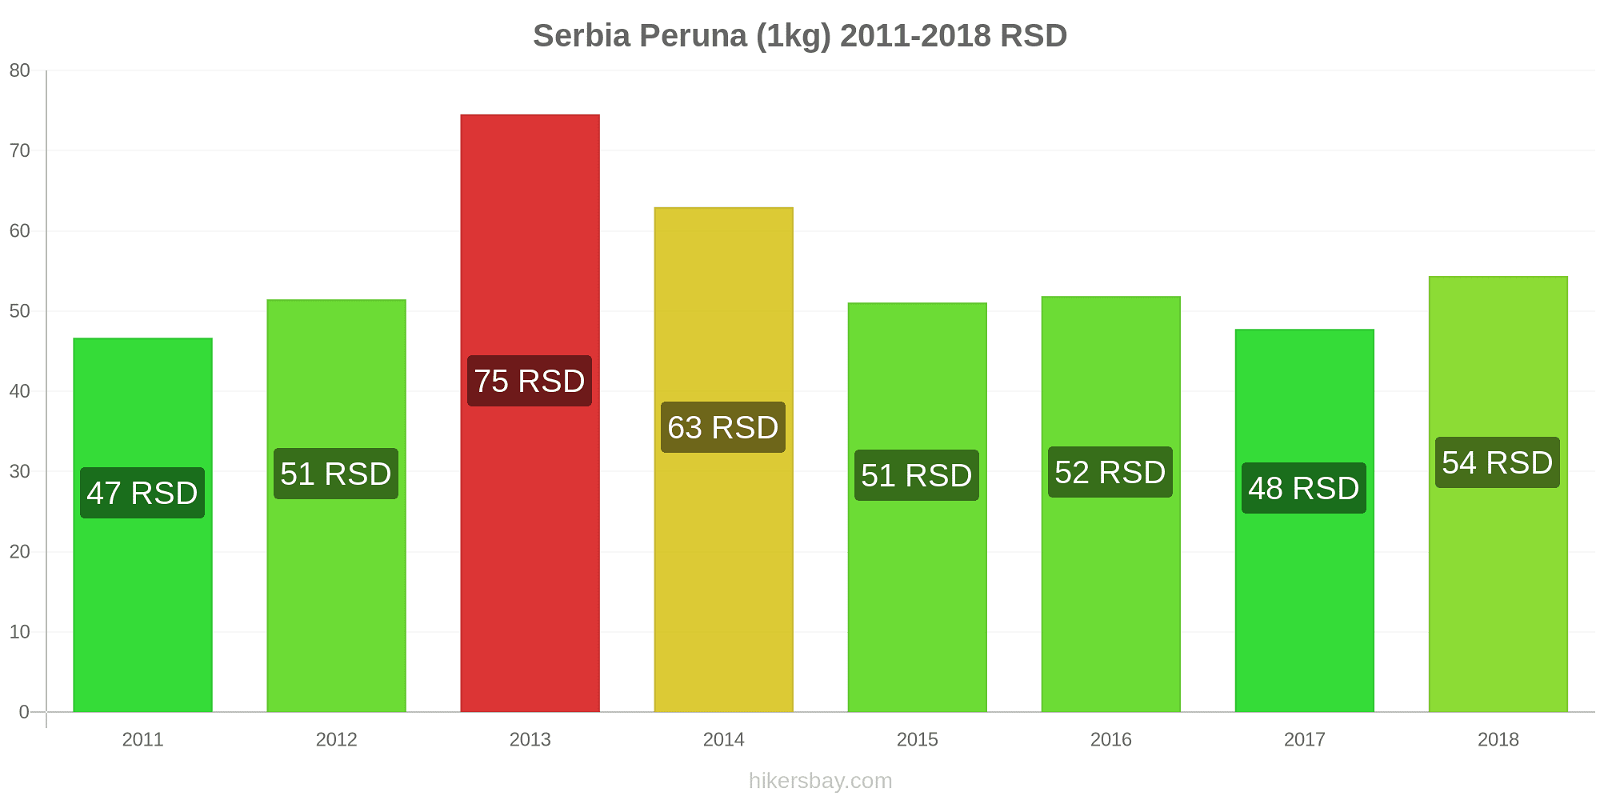 Serbia hintojen muutokset Peruna (1kg) hikersbay.com